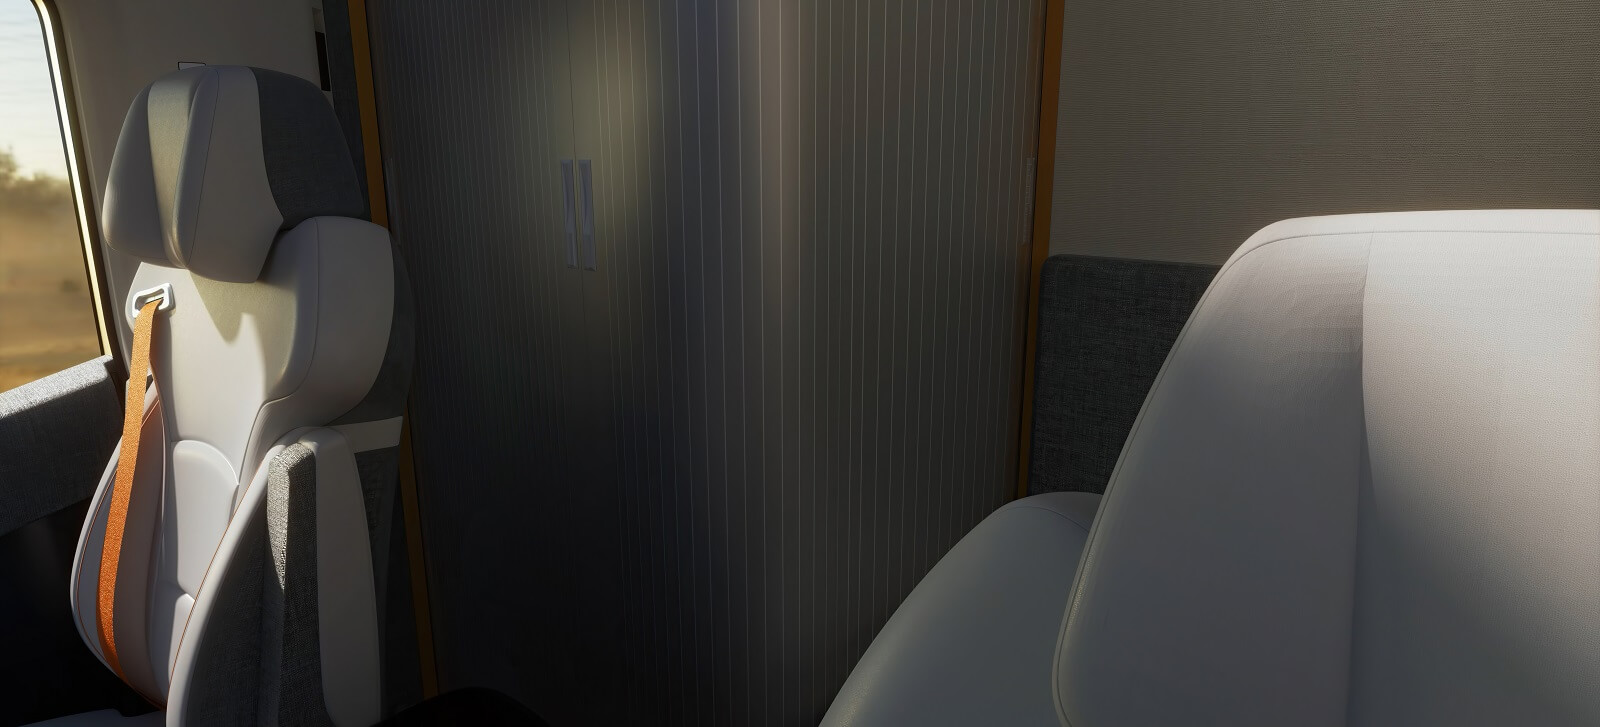 Дизайн кабины Homtruck включает в себя ванную комнату с душем и туалетом